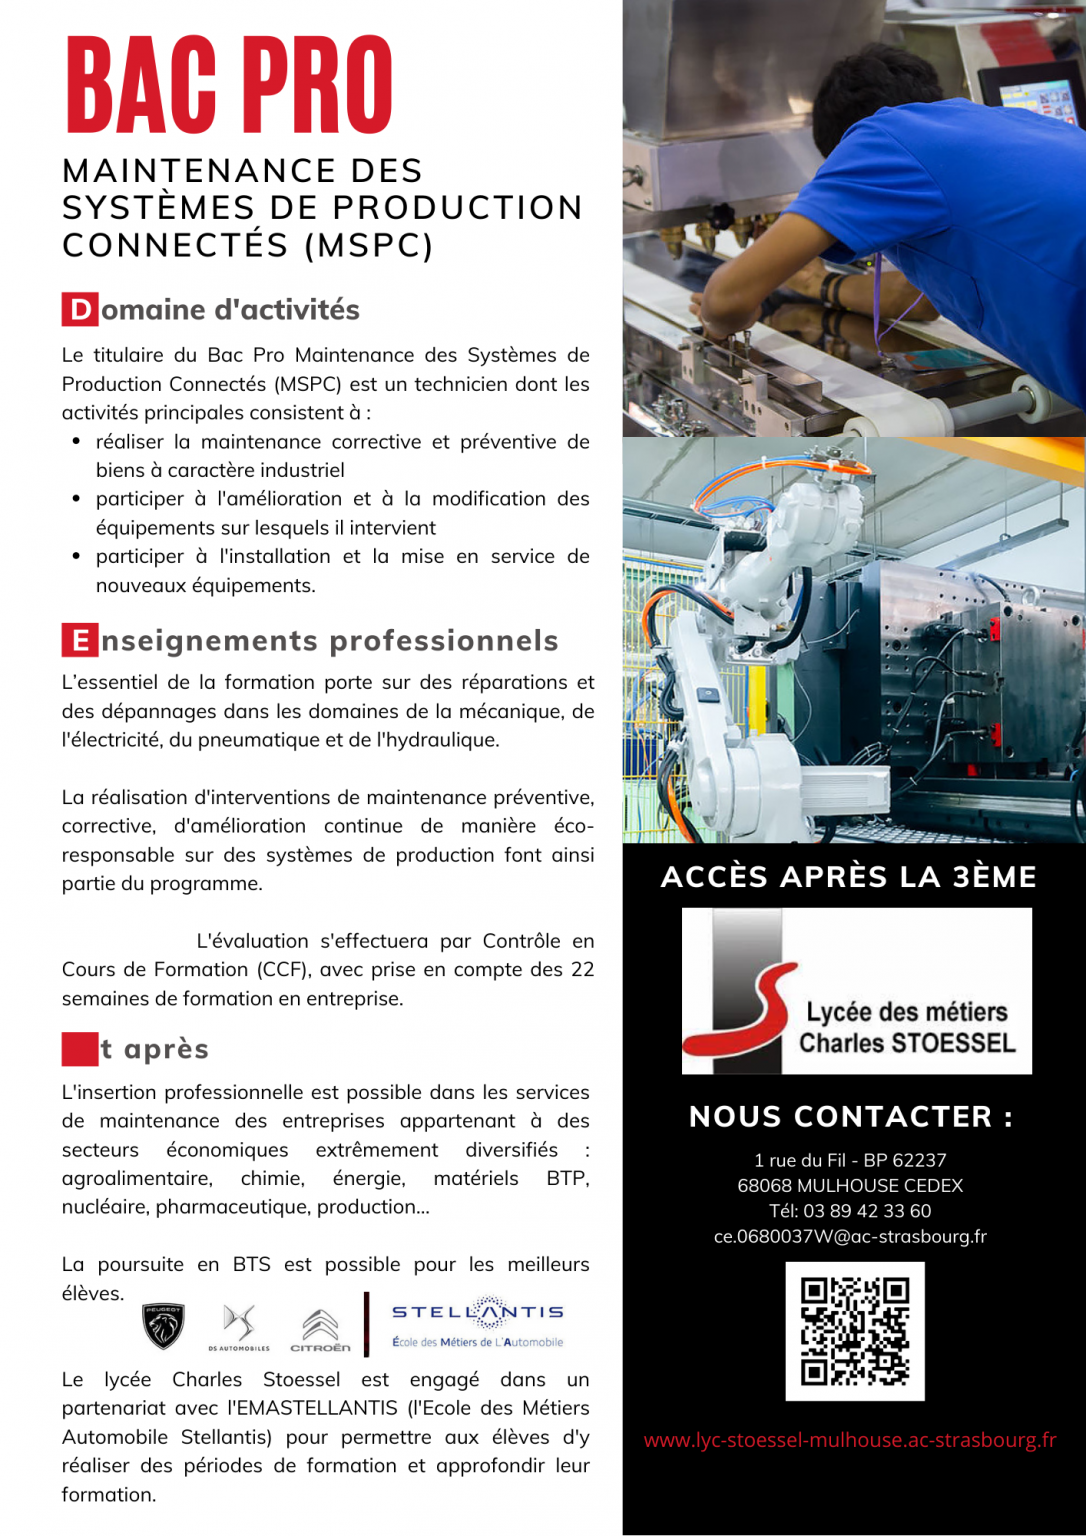 BAC PRO MSPC Maintenance des Systèmes de Production Connectés